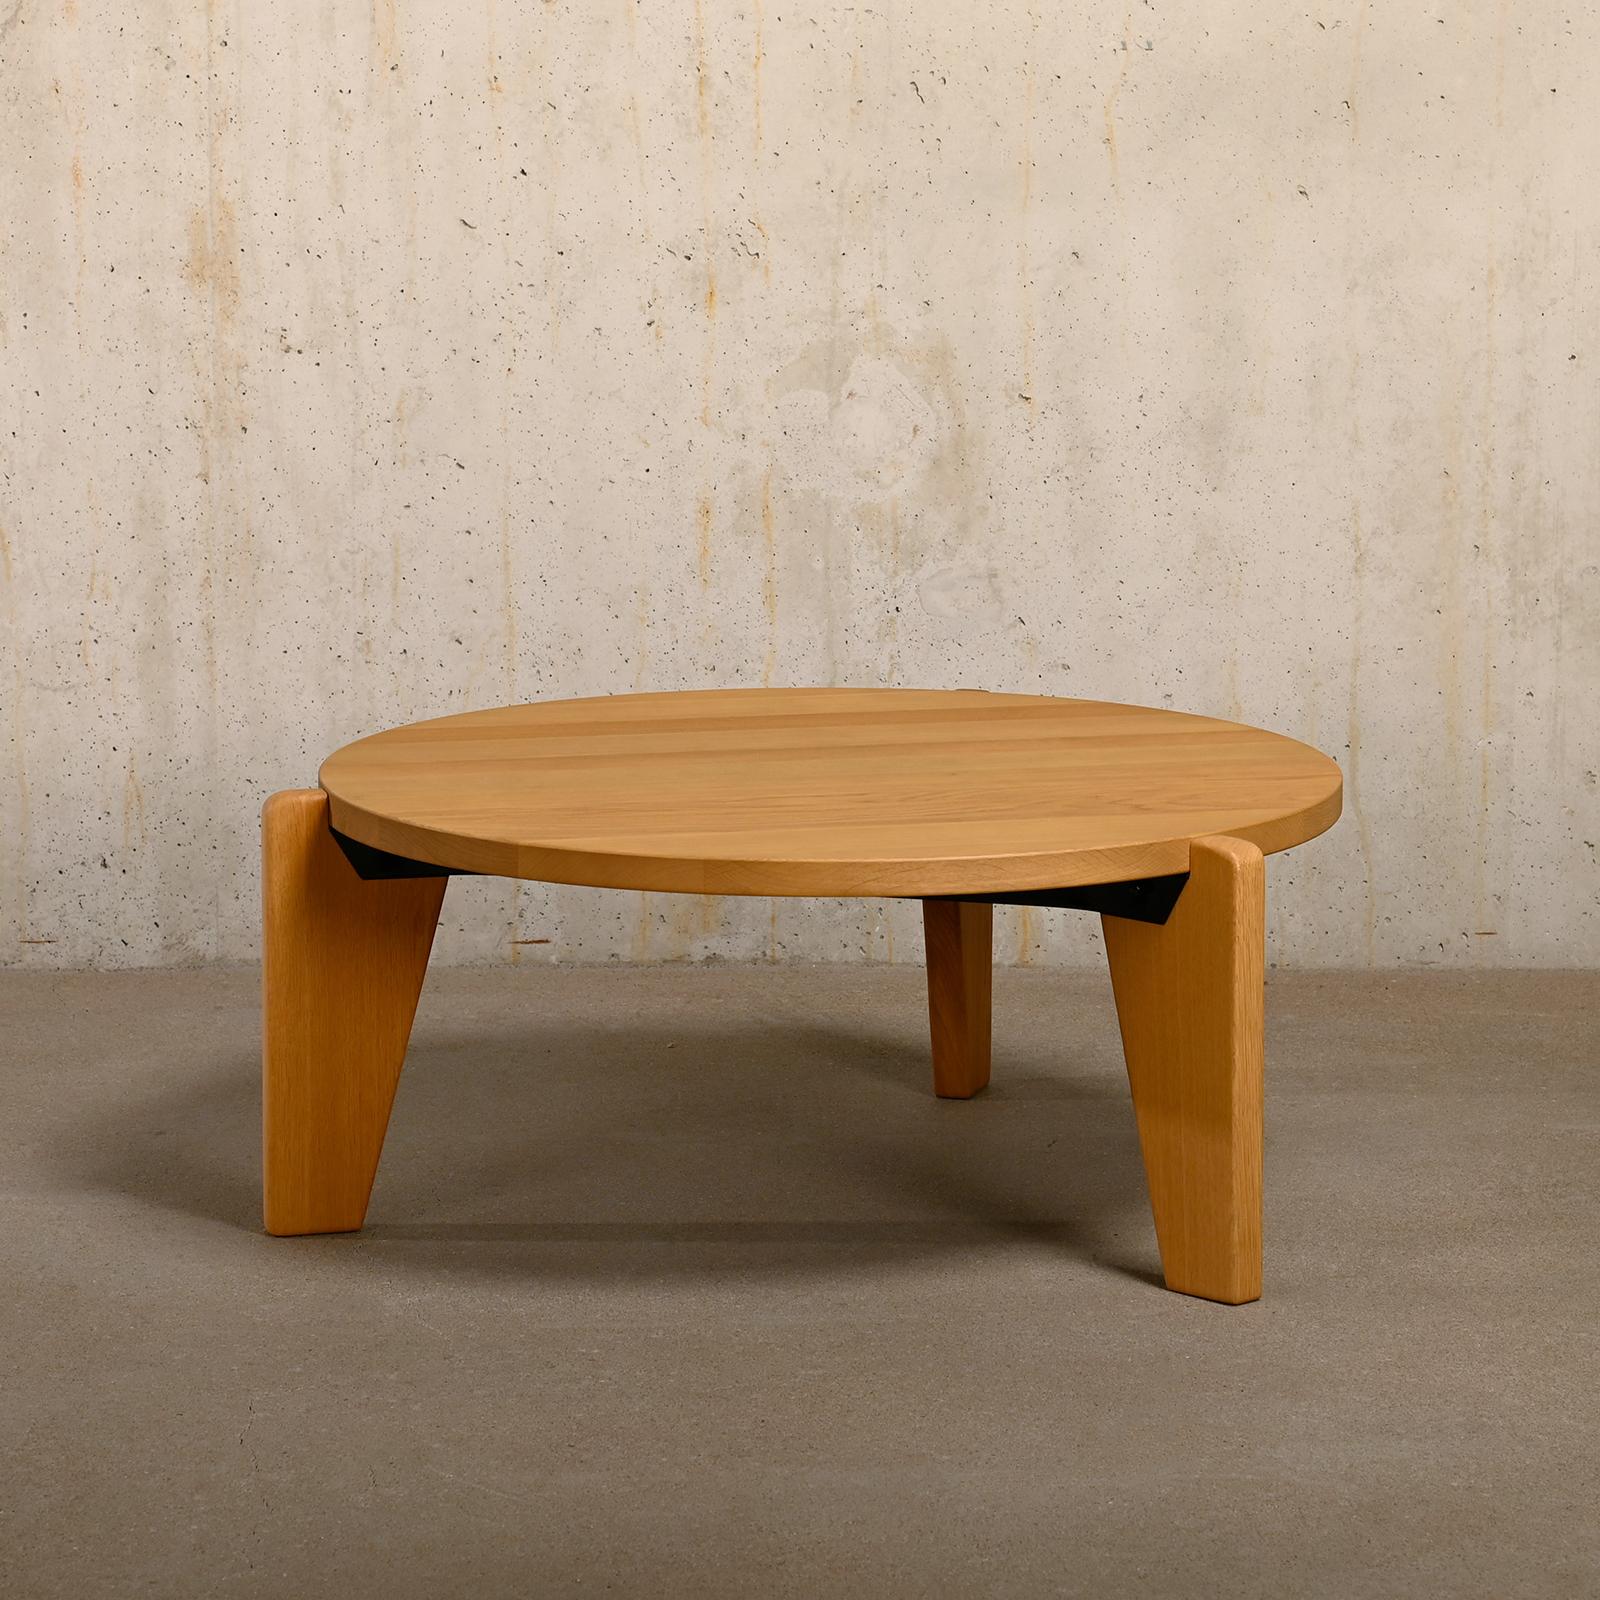 Table basse en chêne massif Guéridon Bas conçue par Jean Prouvé en 1944 et fabriquée par Vitra en 2022. Très bon / excellent état avec des traces d'utilisation minimes. La table est de bonne taille et présente les caractéristiques typiques d'un